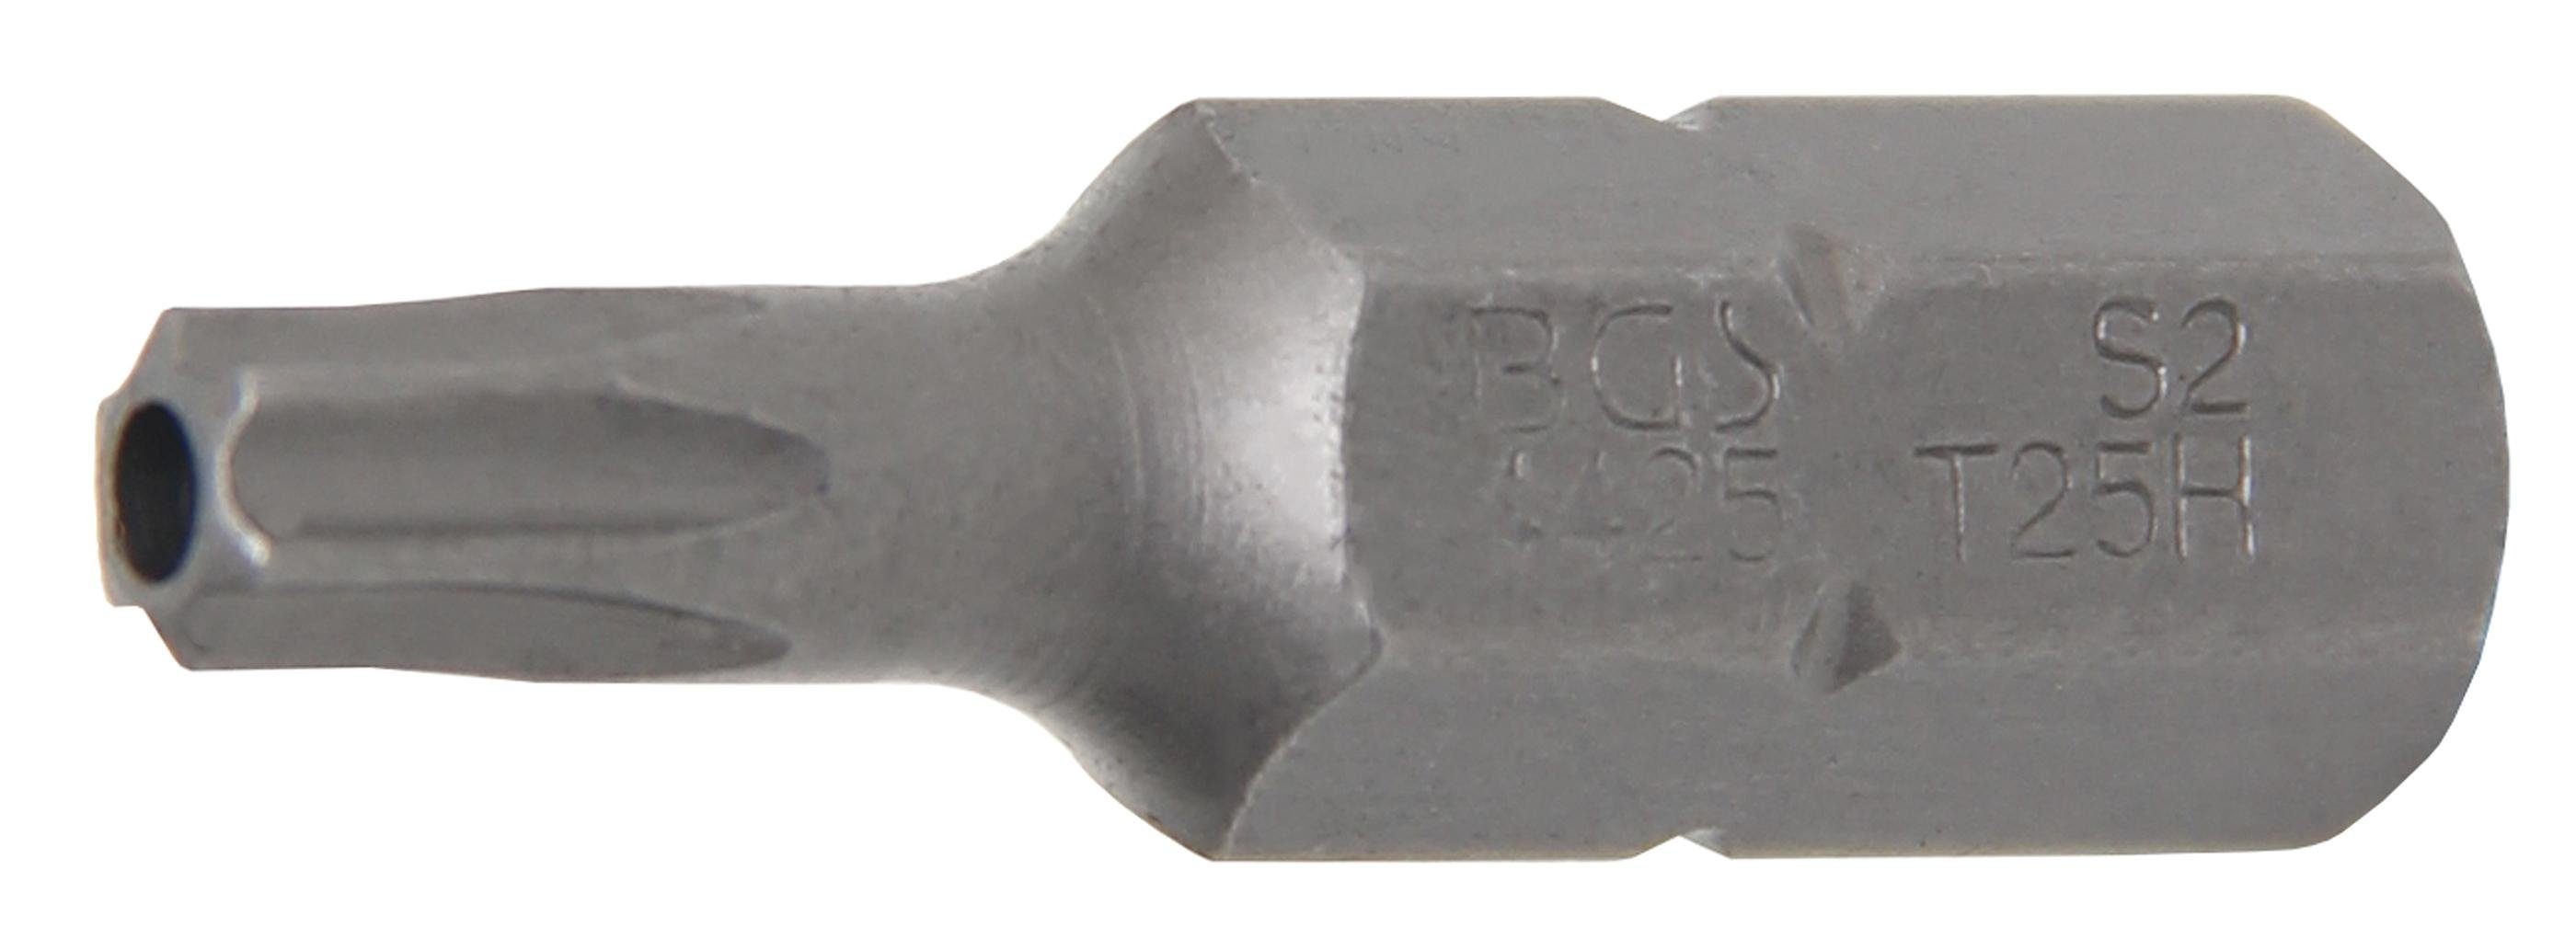 Bohrung (für BGS 8 T-Profil Torx) technic Antrieb mm mit Bit, Außensechskant T25 (5/16), mm, 30 Länge Bit-Schraubendreher